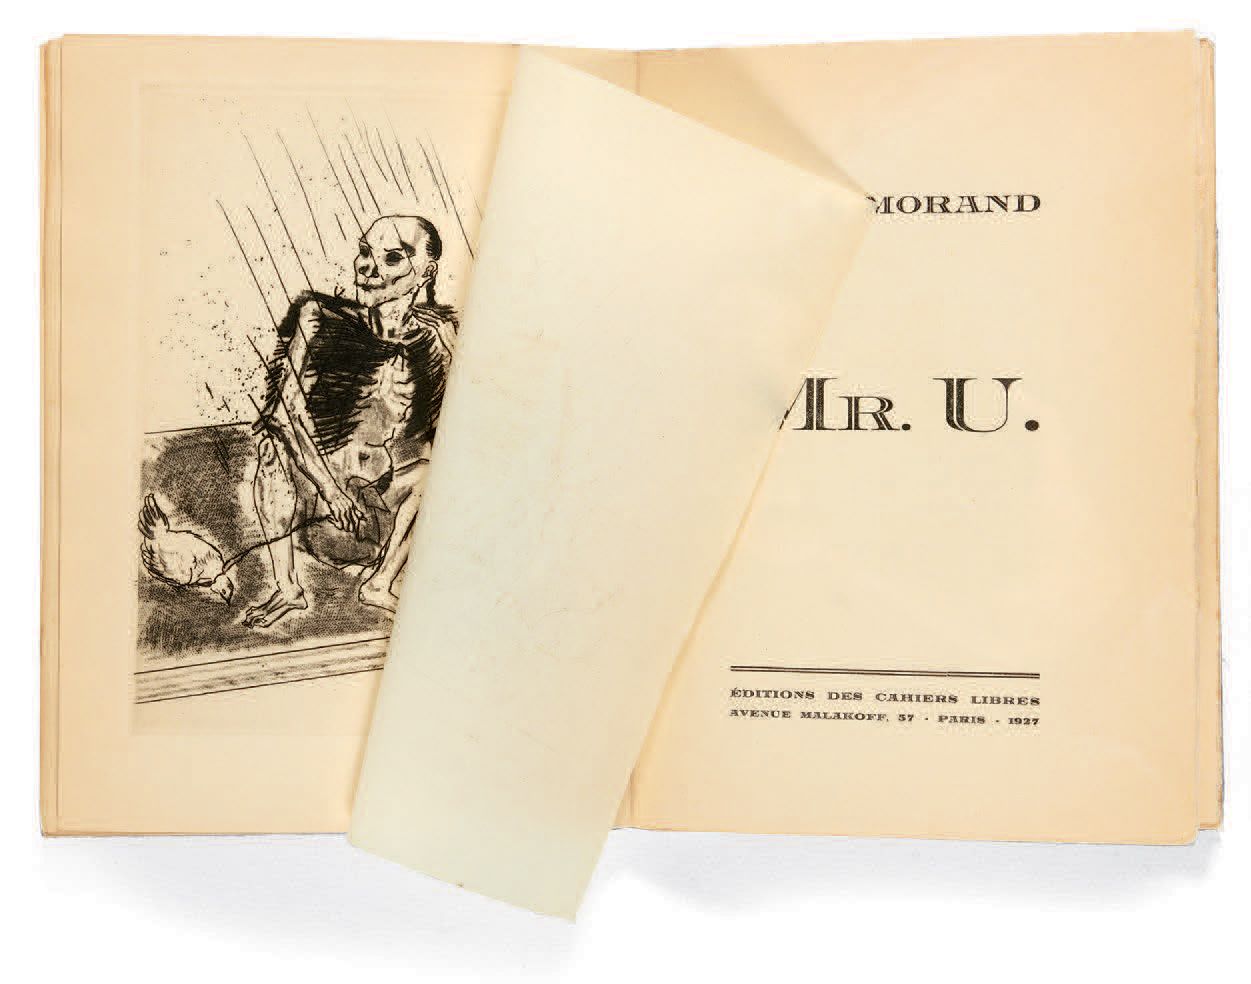 MORAND, Paul. Sr. U. París, Éditions des Cahiers libres, 1927.
In-12 [192 x 143]&hellip;